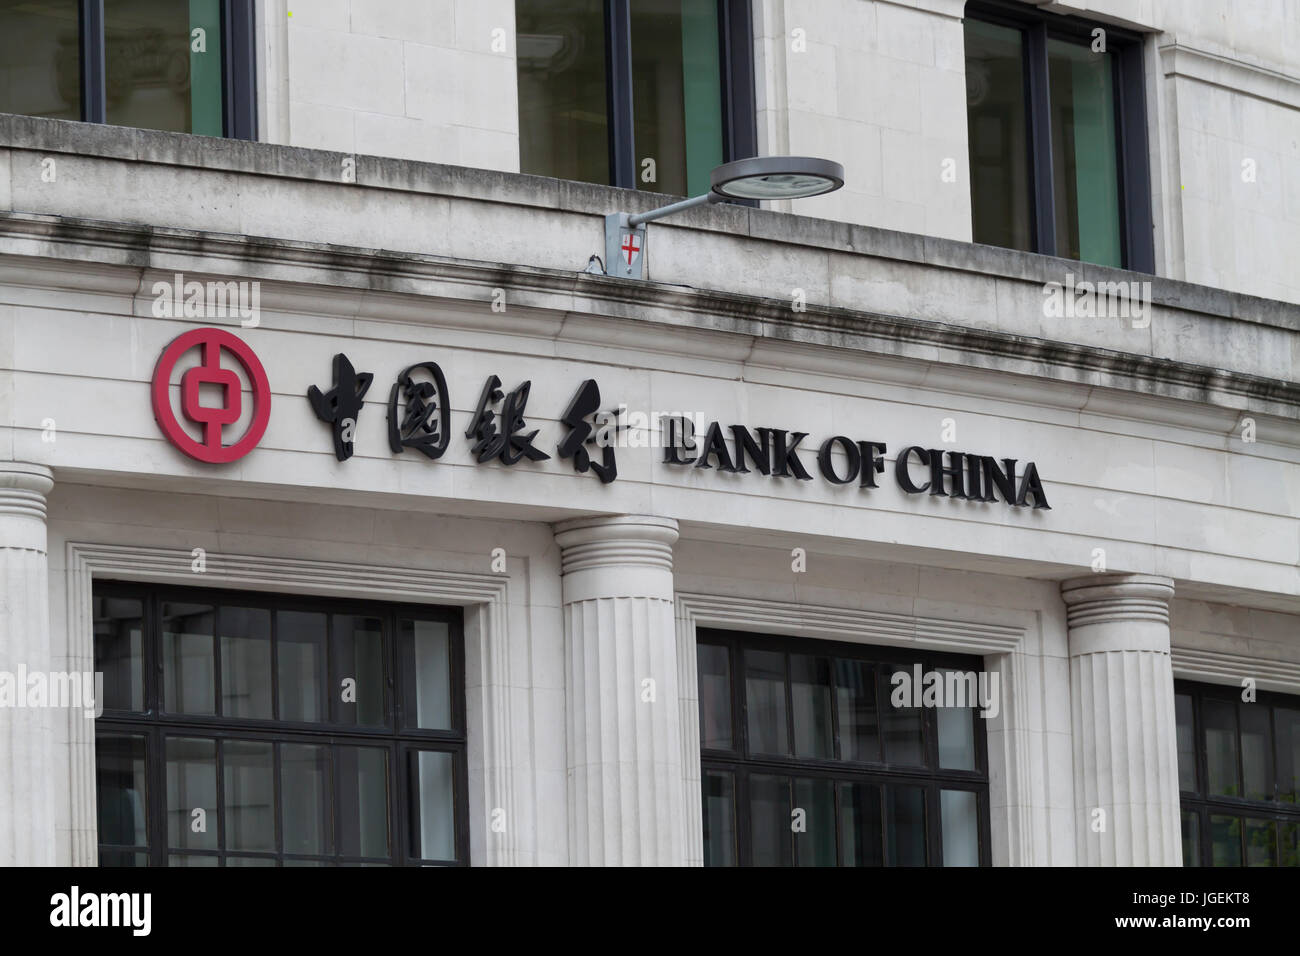 Vue rapprochée de la Banque de Chine, marque et logo à Londres Banque D'Images